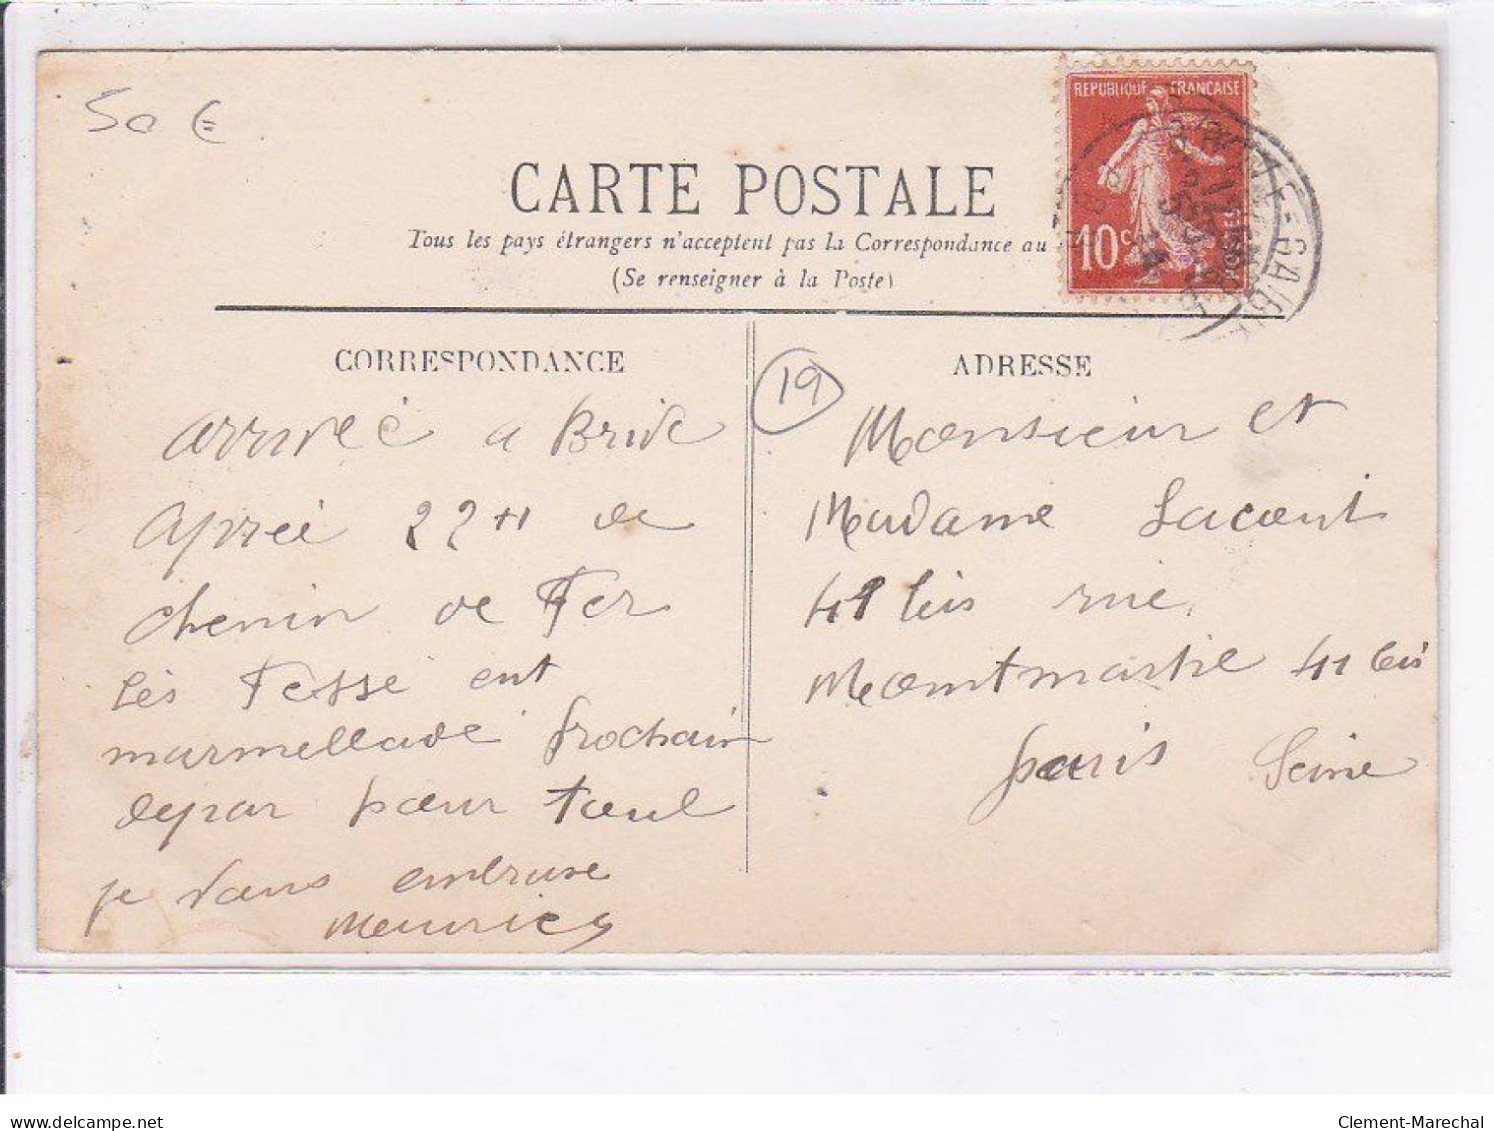 BRIVE: La Digue, Inondation Du 30 Novembre 1910 - Très Bon état - Other & Unclassified